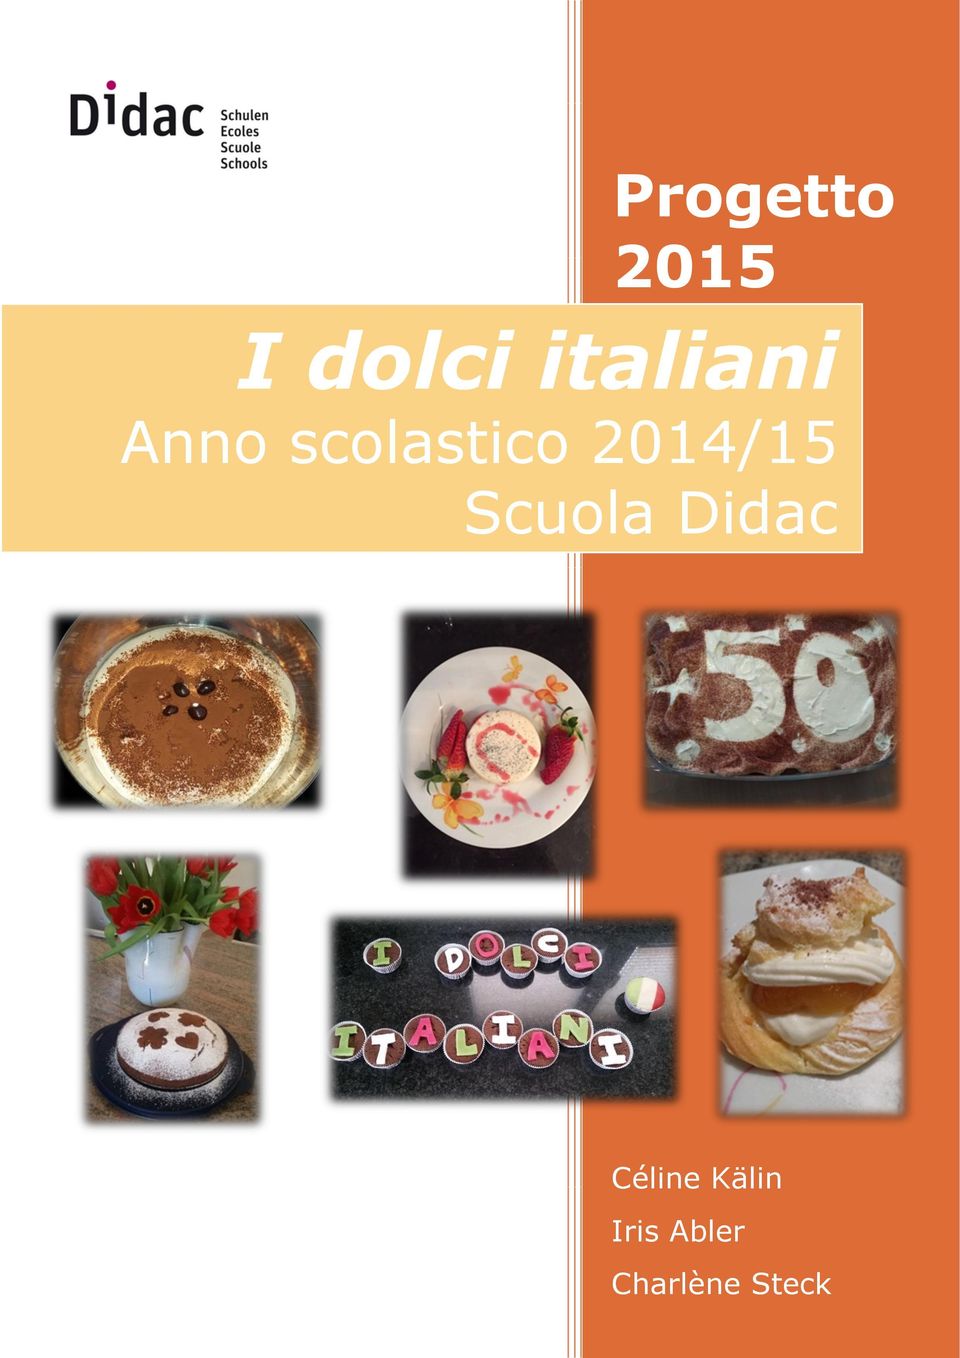 2014/15 Scuola Didac